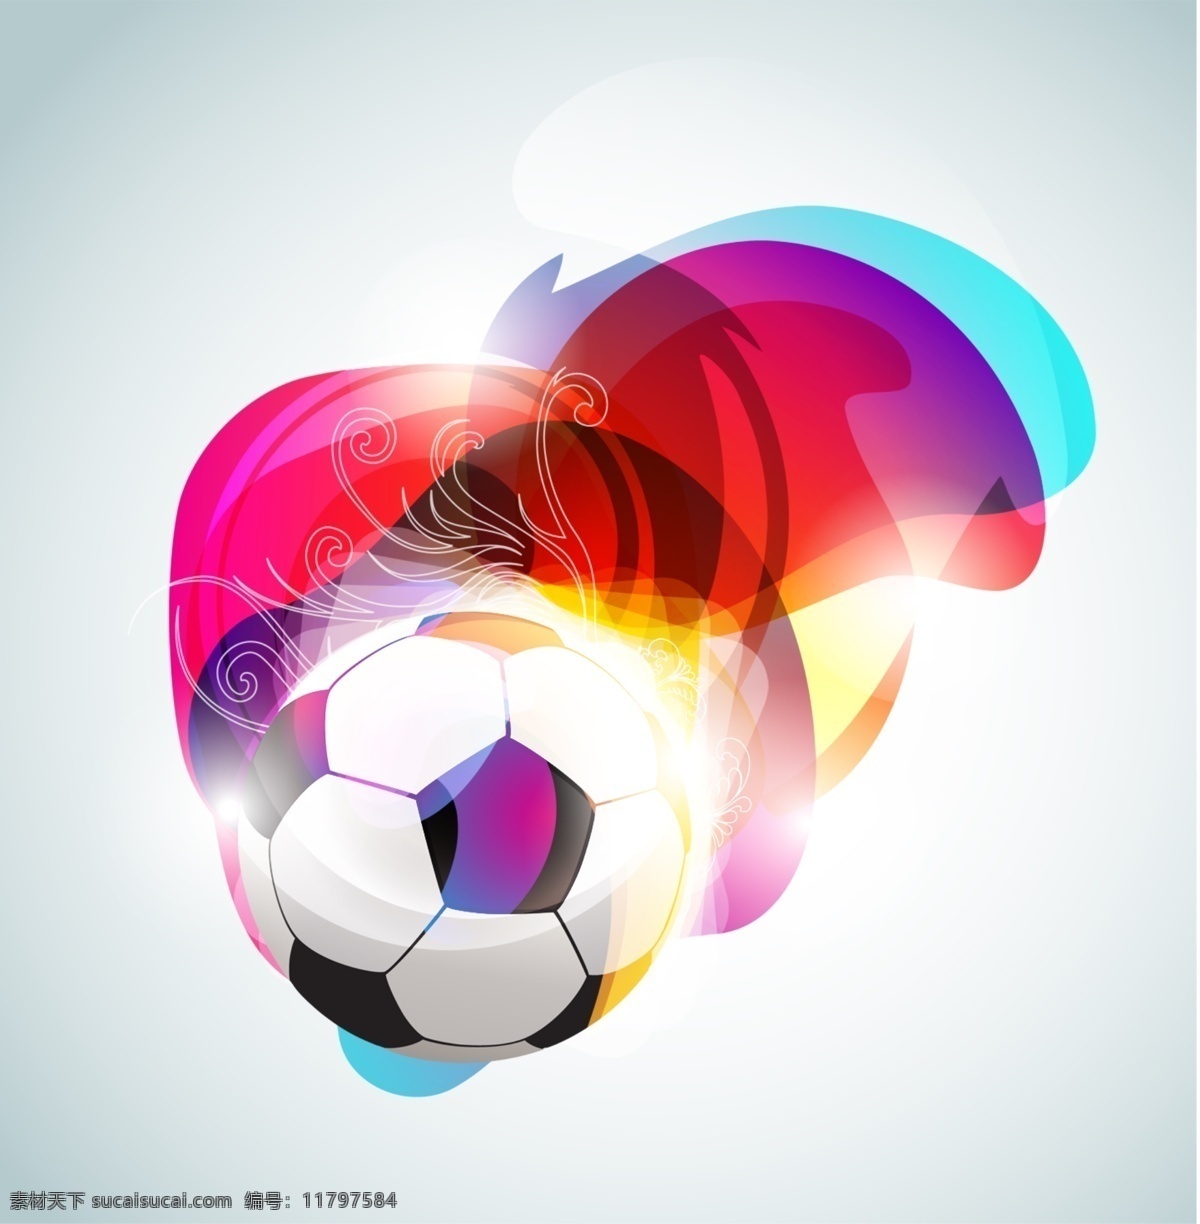 分层 缤纷 动感 五彩 线条 颜色 源文件 足球 运动 模板下载 矢量图 日常生活